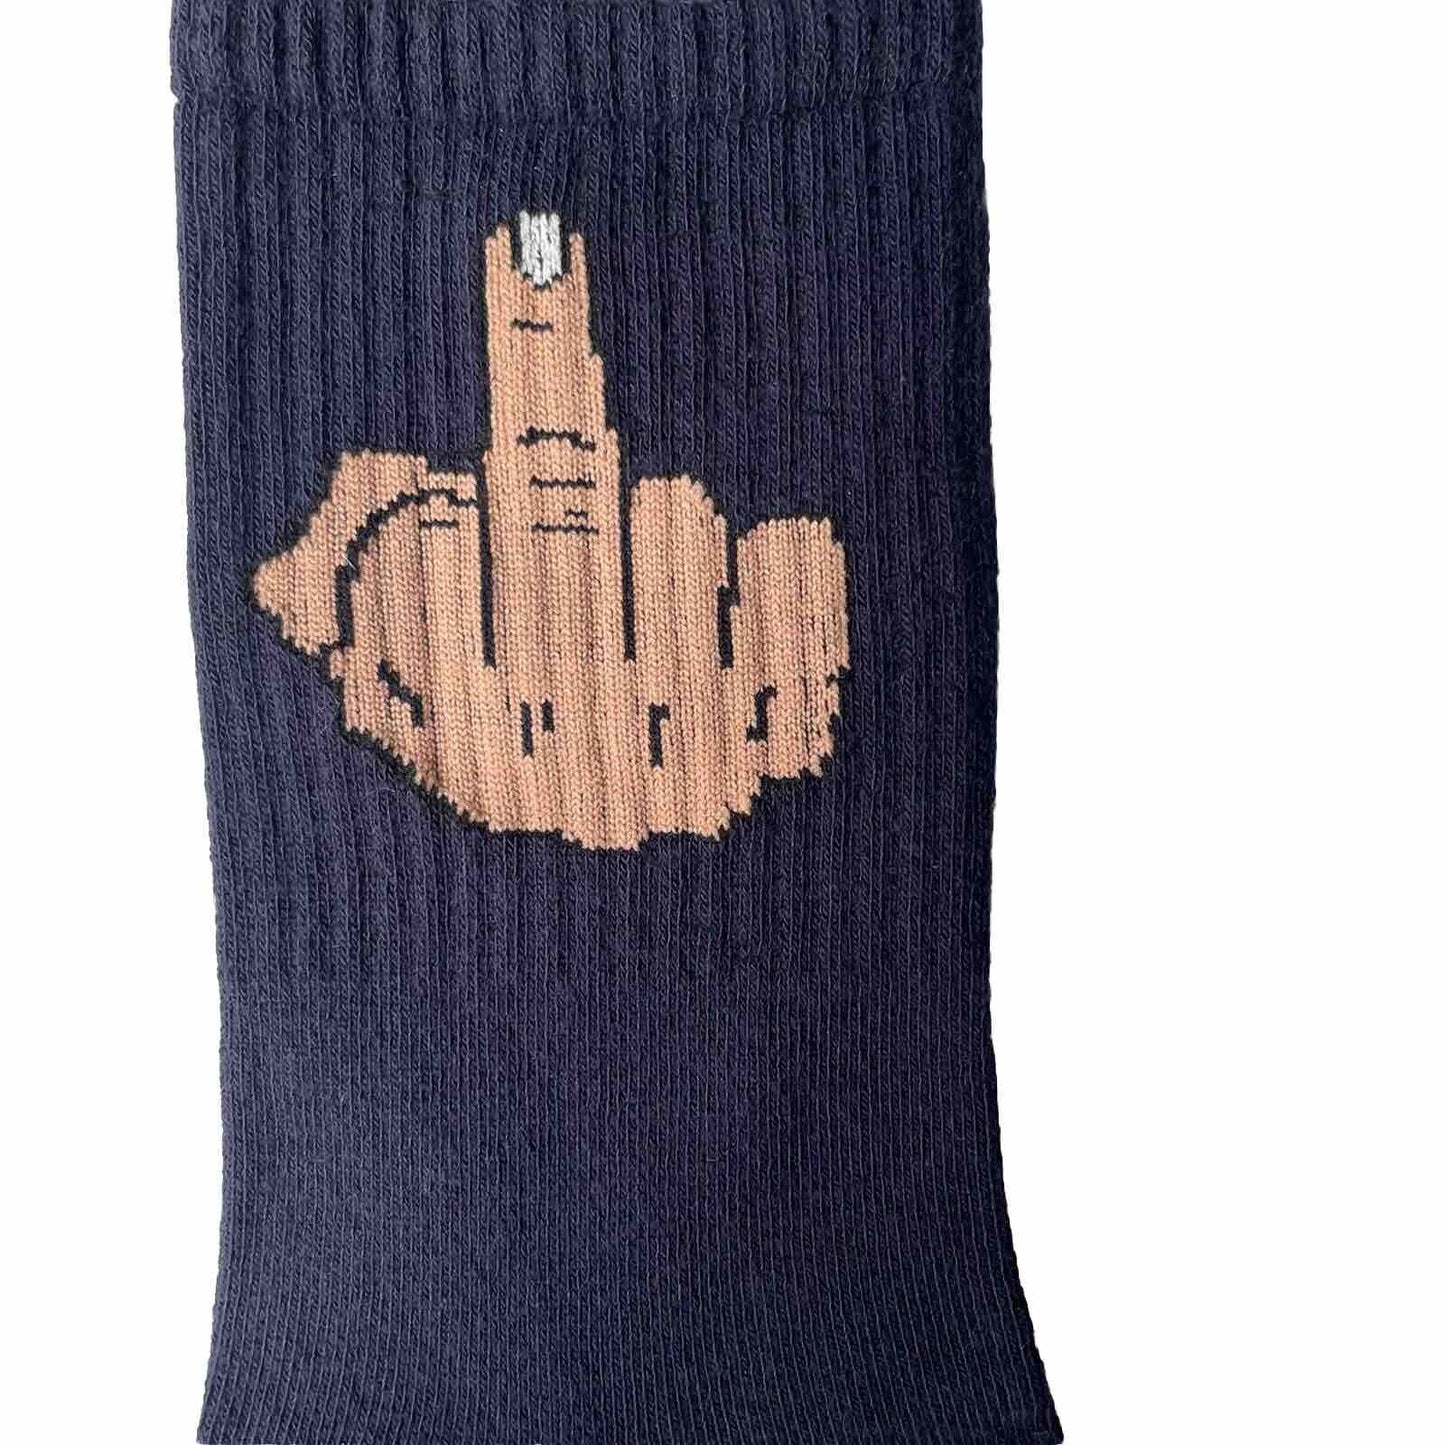 Novelty Socks Middle Finger Top